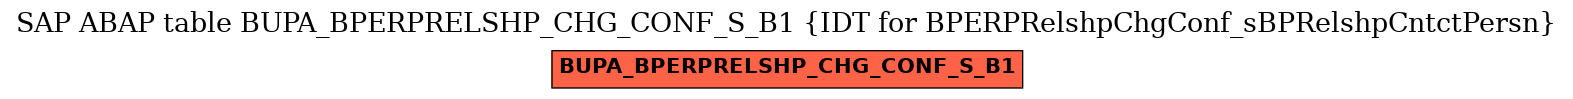 E-R Diagram for table BUPA_BPERPRELSHP_CHG_CONF_S_B1 (IDT for BPERPRelshpChgConf_sBPRelshpCntctPersn)